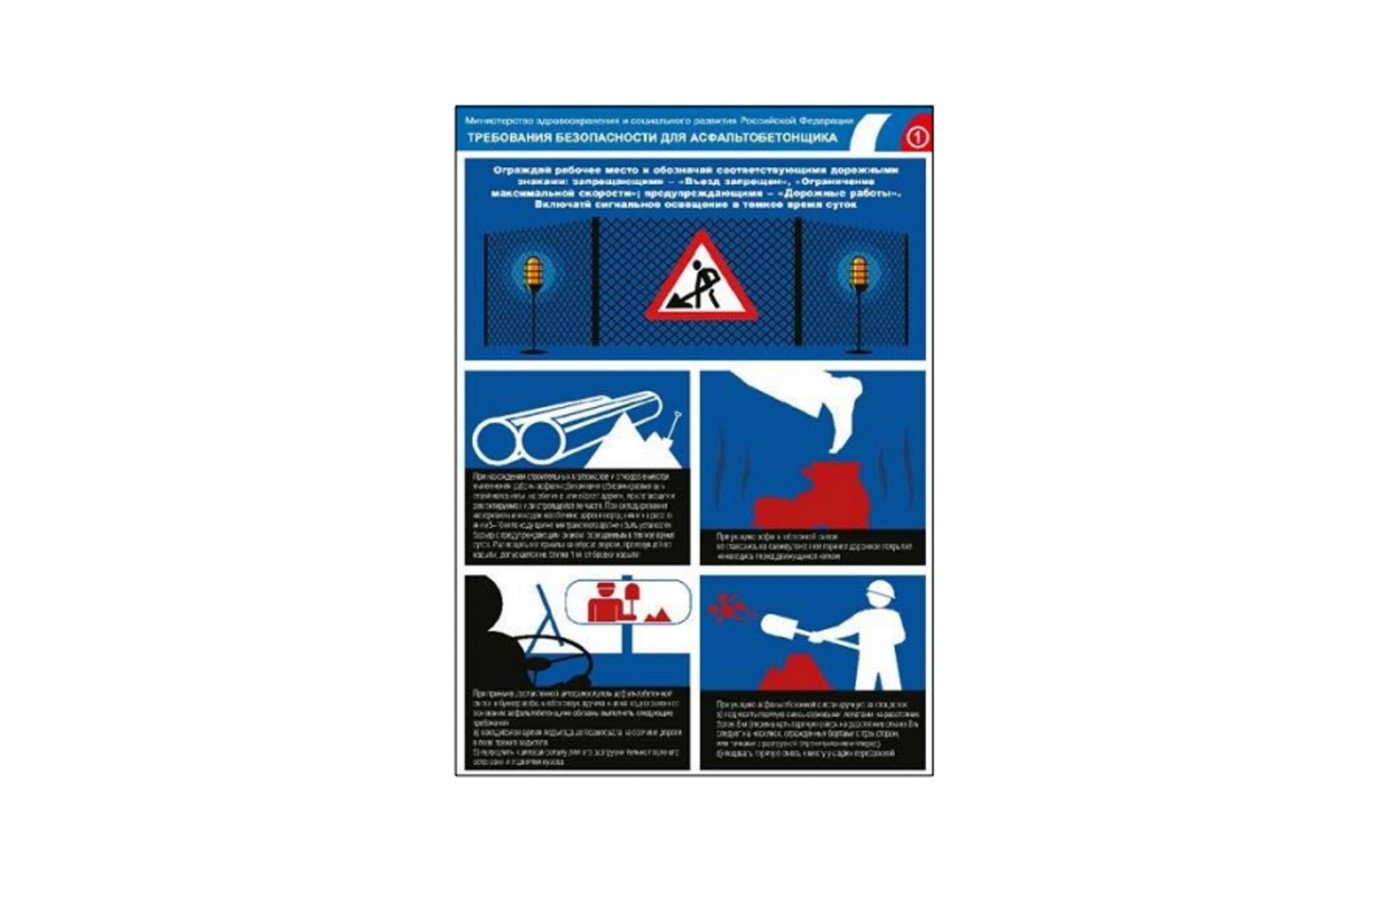 Плакат "Требования безопасности для асфальтобетонщика"